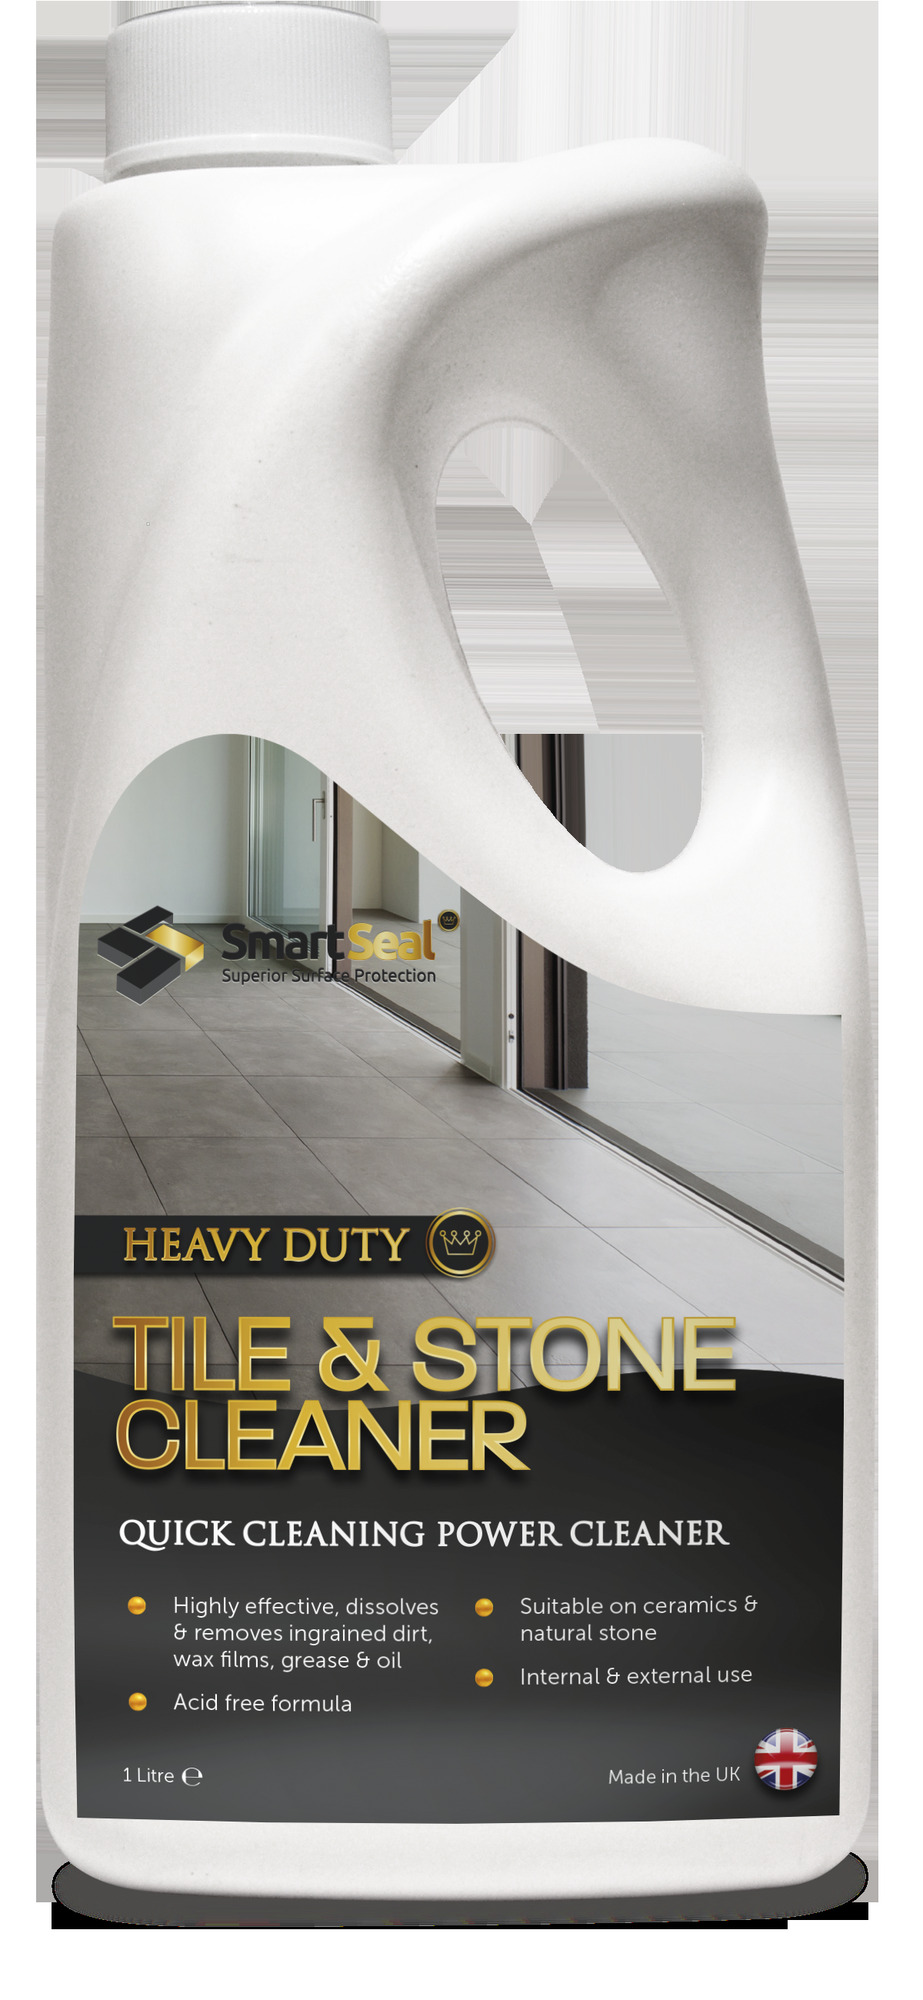 Heavy Duty Tile Stone Cleaner, Best Floor Cleaner For Ceramic Tile Uk